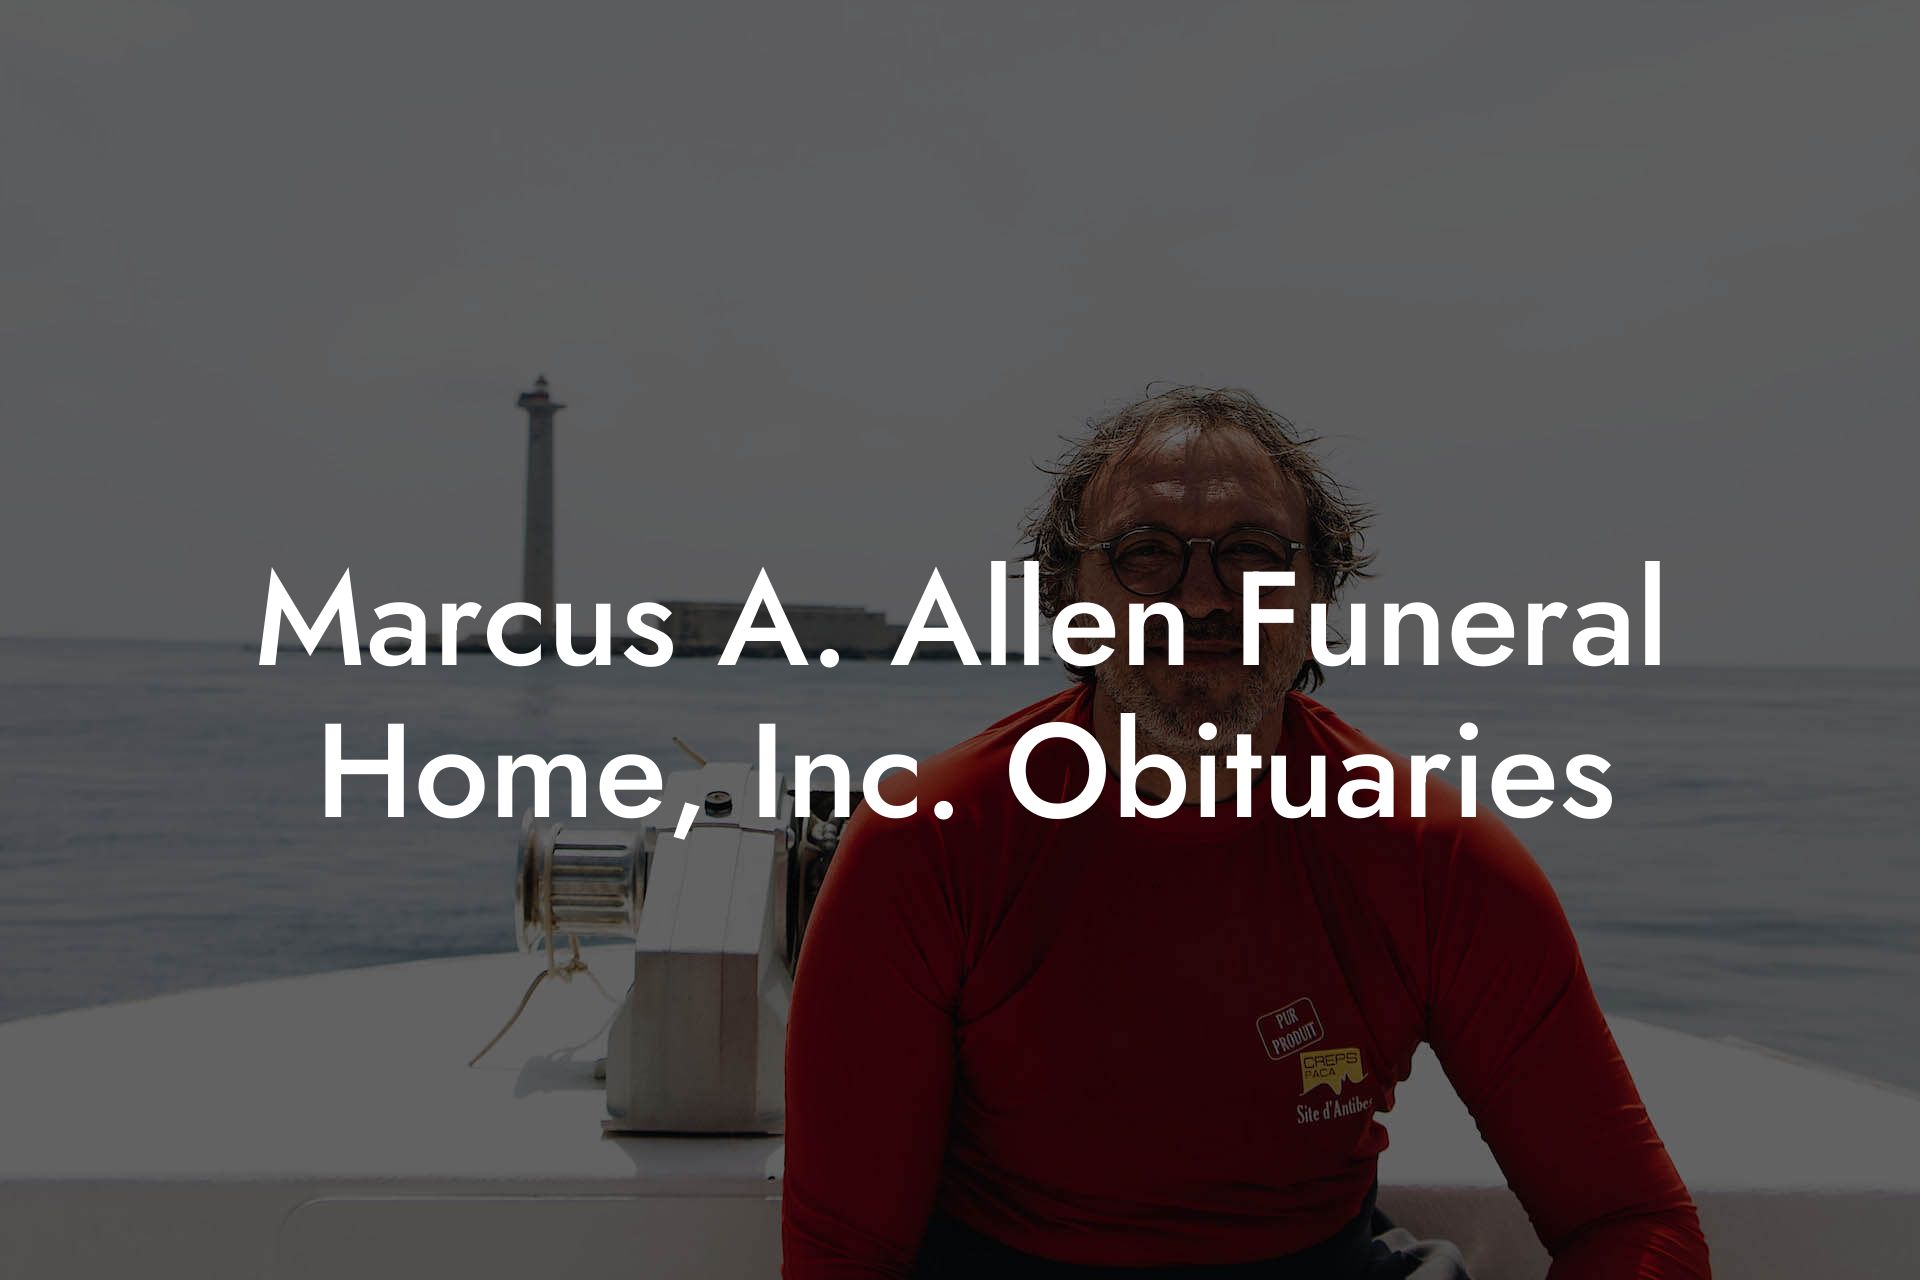 Marcus A. Allen Funeral Home, Inc. Obituaries